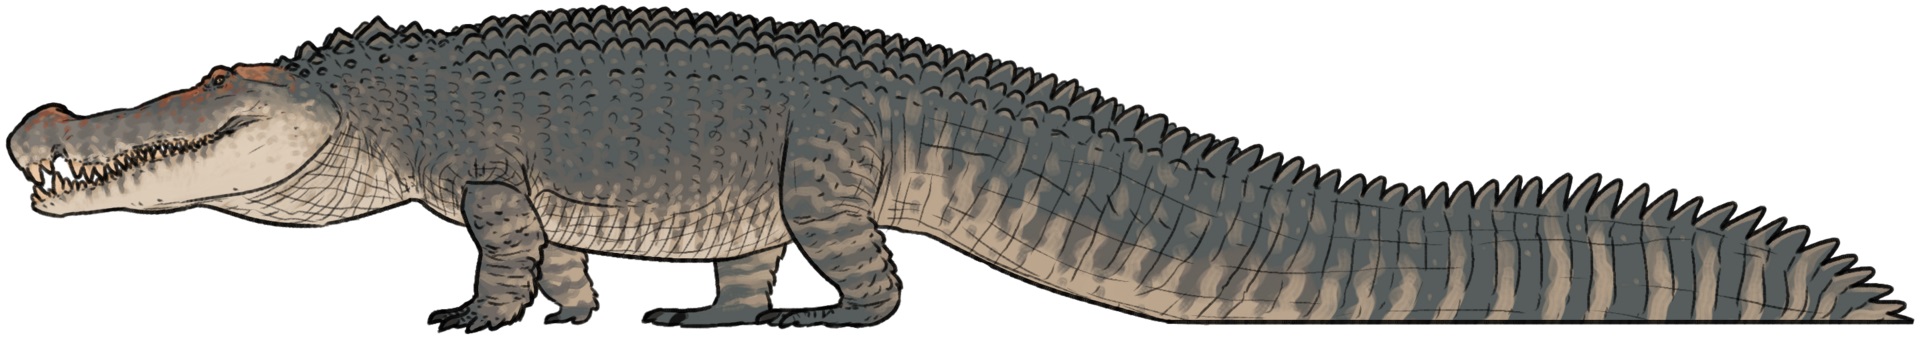 Přibližný tvar těla deinosucha (zde zástupce typového druhu D. hatcheri), obřího příbuzného dnešních aligátorů a kajmanů. Tento krokodýlí kolos zřejmě dosahoval délky přes 10 metrů a hmotnosti kolem 5 tun. Kredit: Connor Ashbridge; Wikipedia (CC BY-S